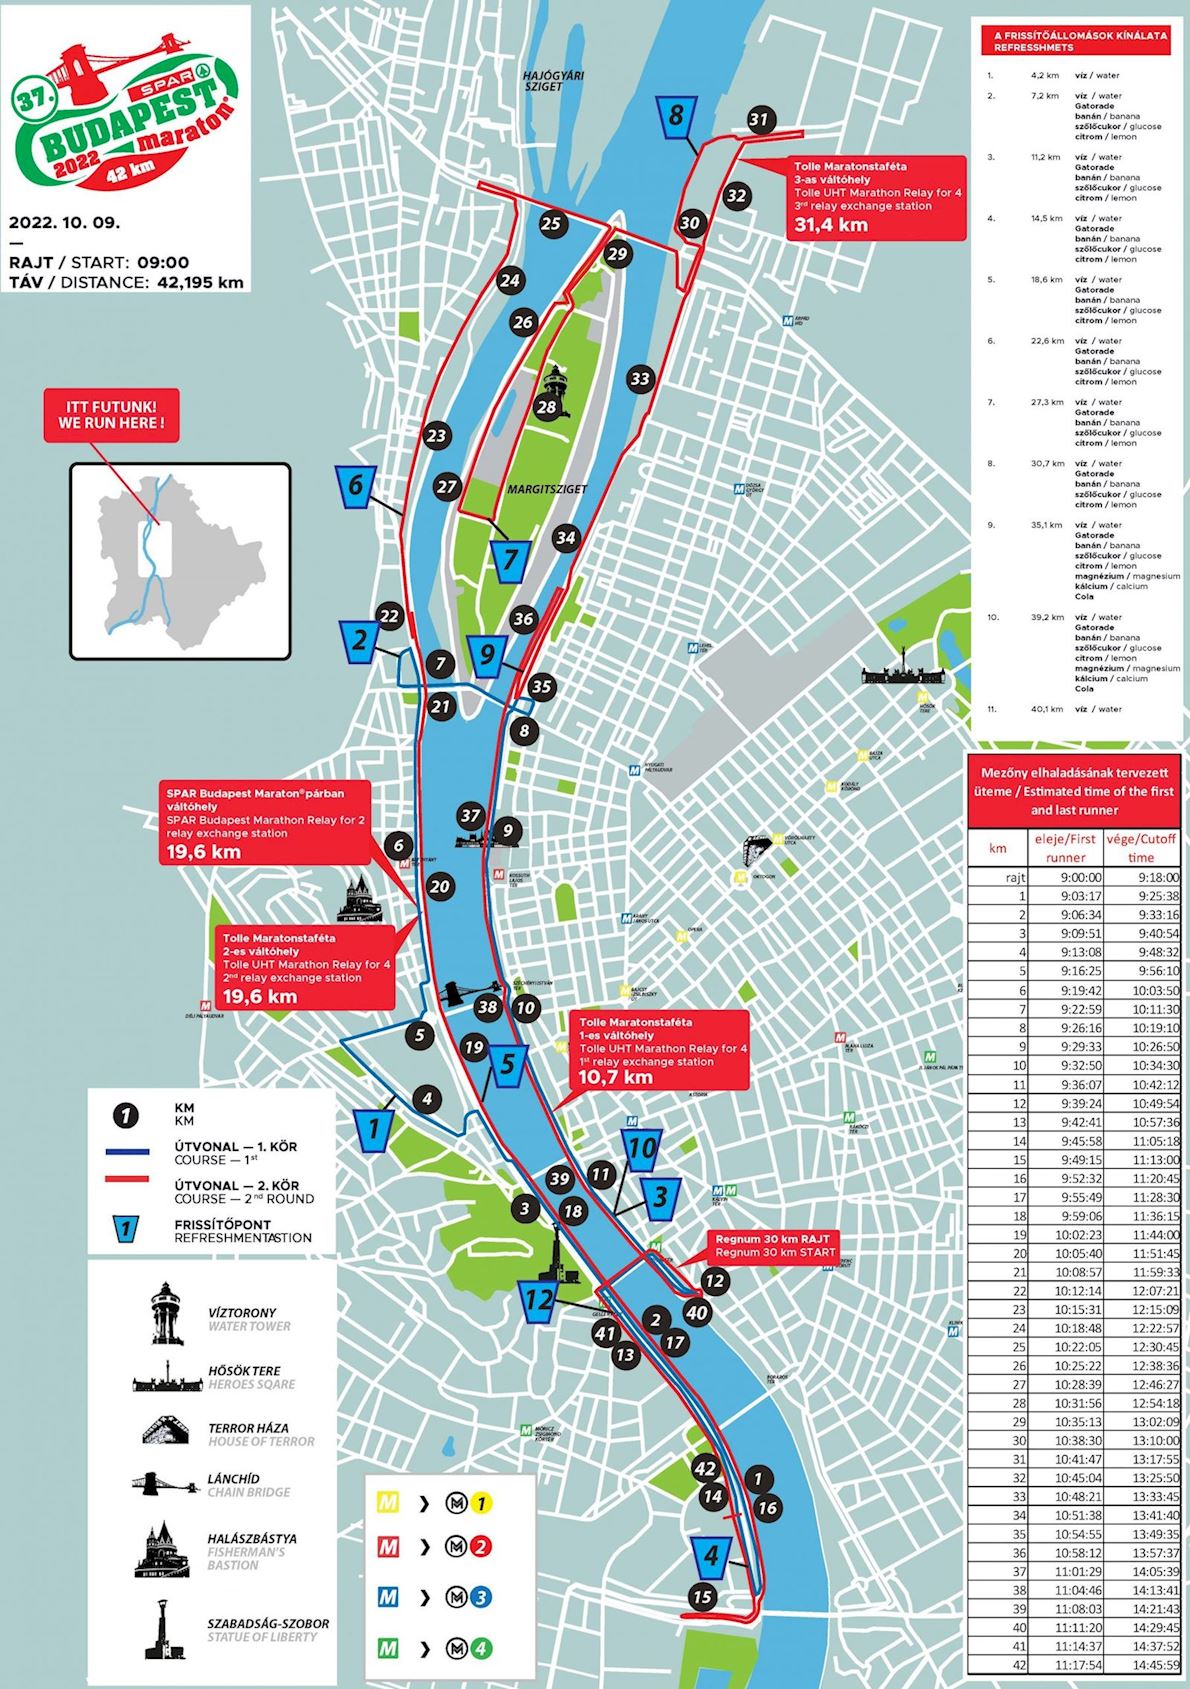 SPAR Budapest Marathon Mappa del percorso